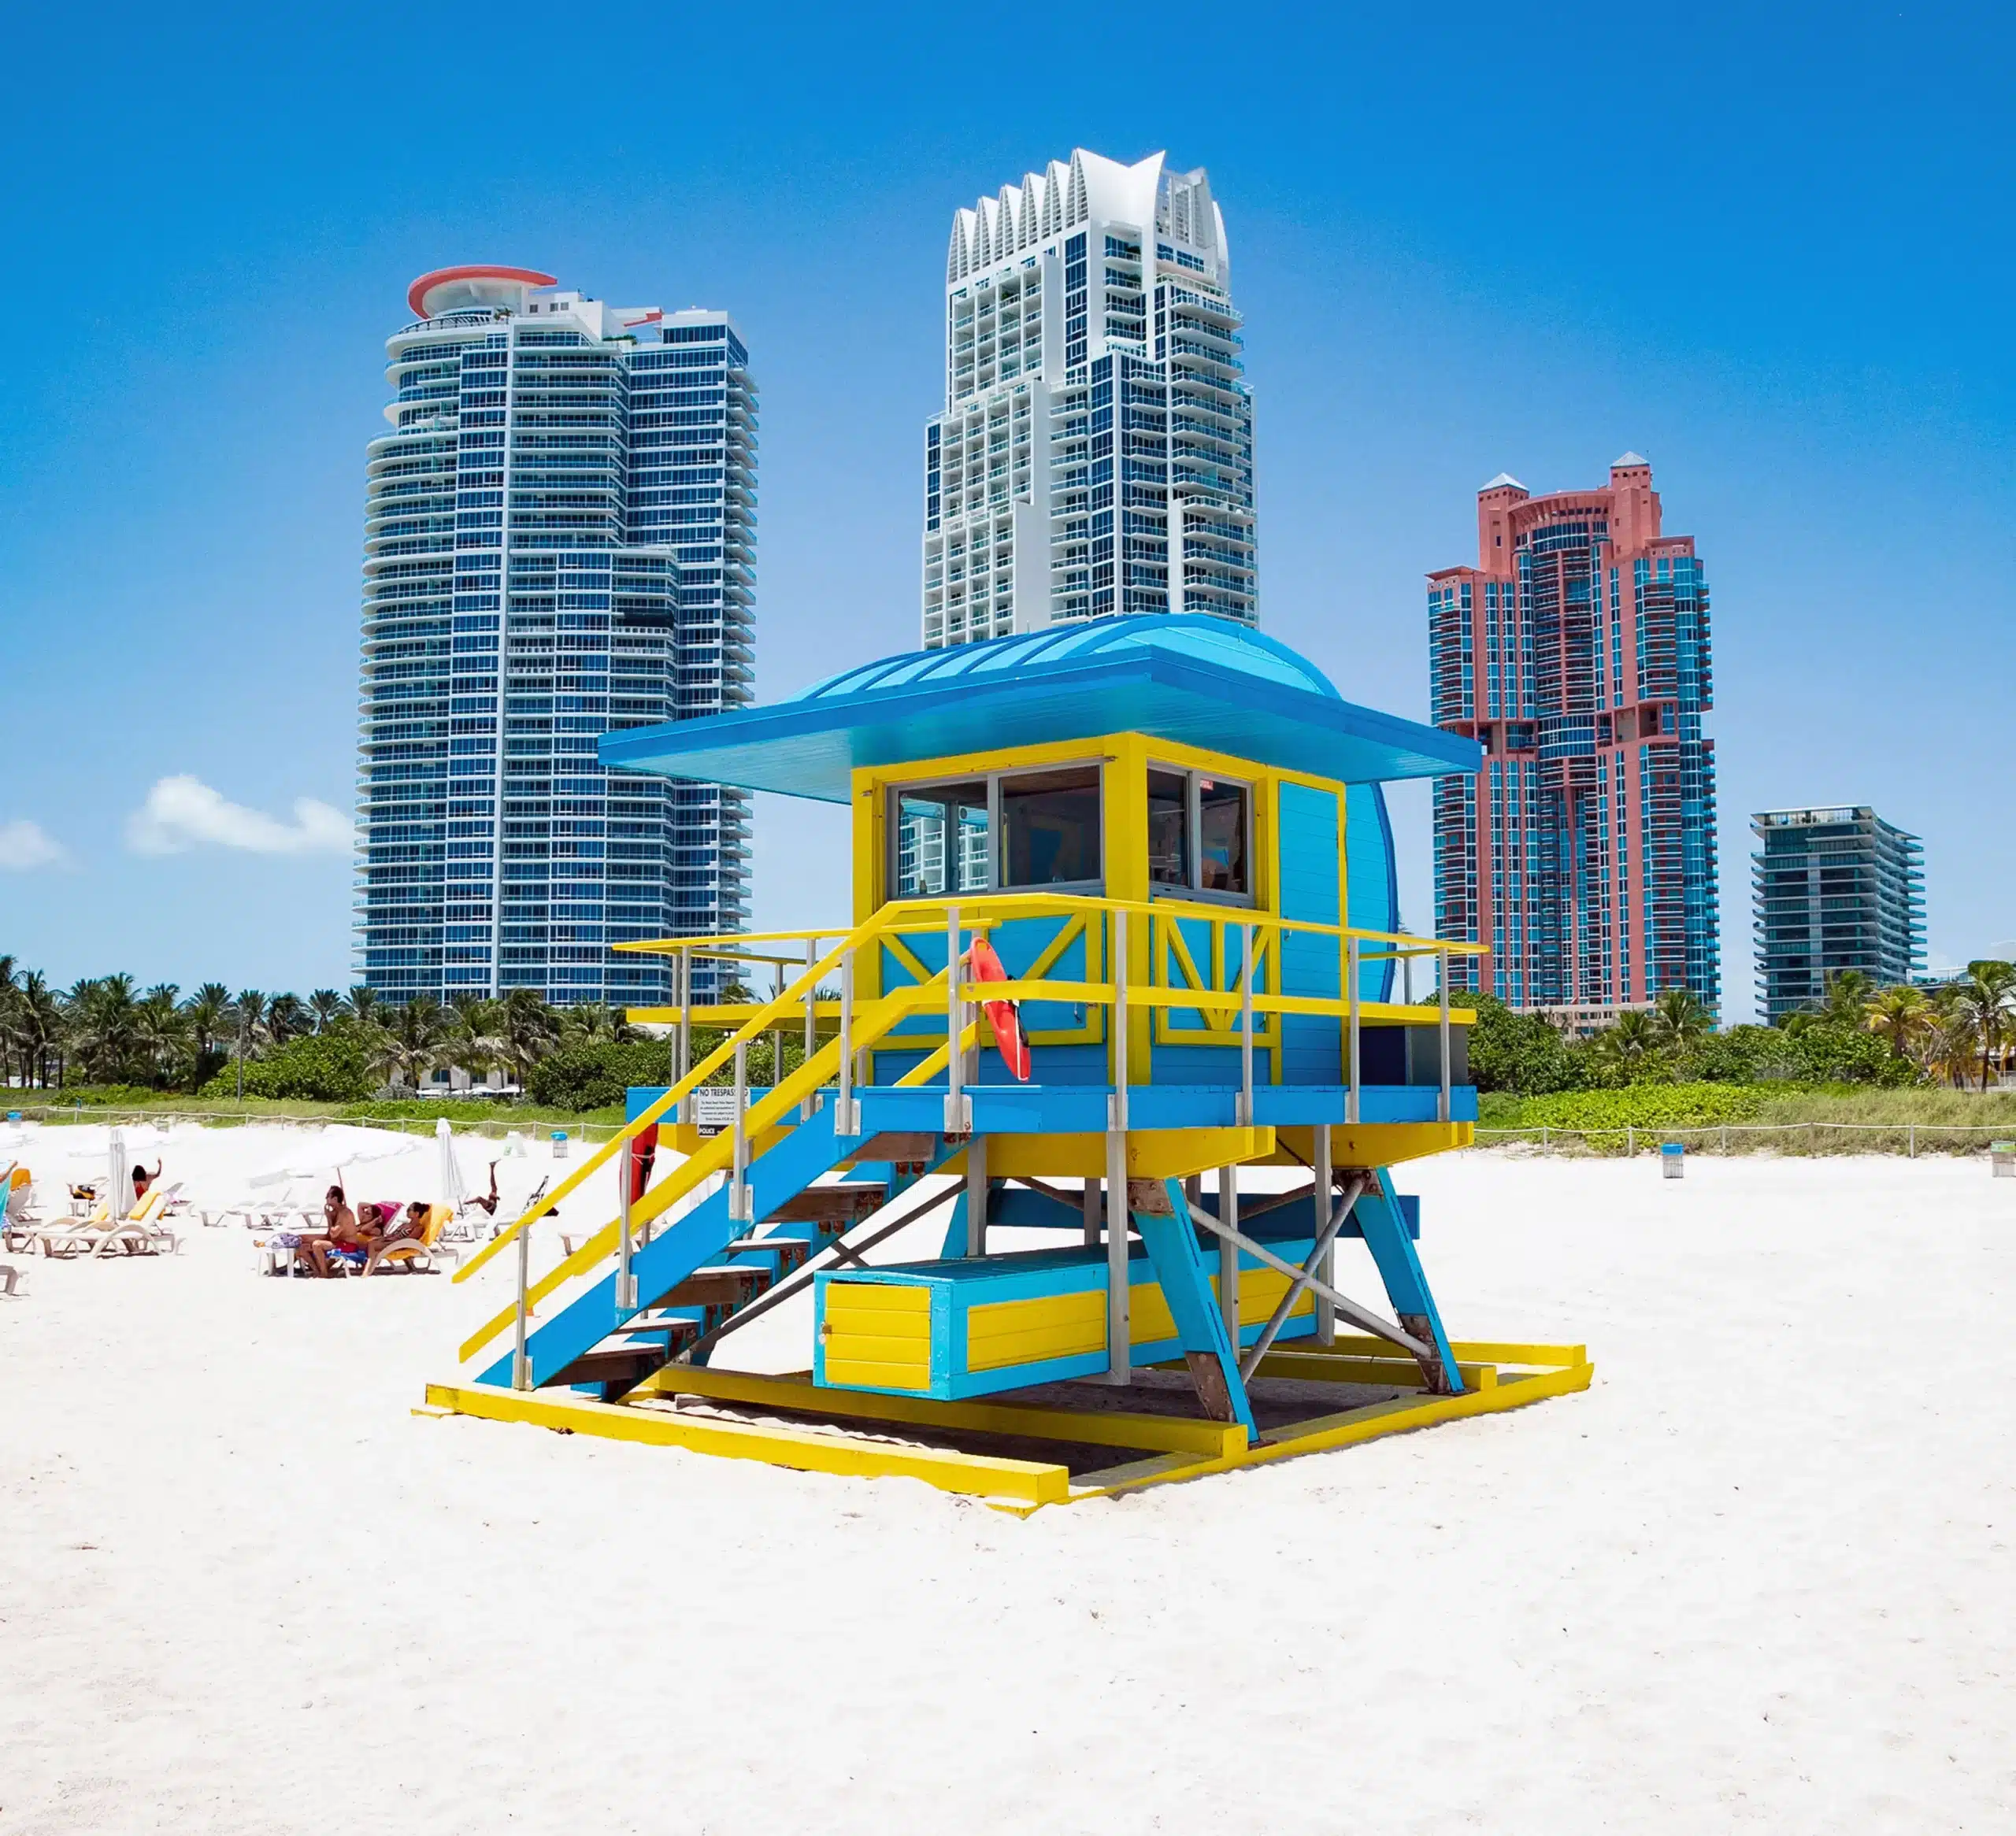 Ein hölzernes Strandwächterhäuschen in Blautönen und Gelb vor einer Skyline mit drei Hochhäusern. Miami Beach, Lifeguard Tower, William Lane, Foto: Archiv Architekten